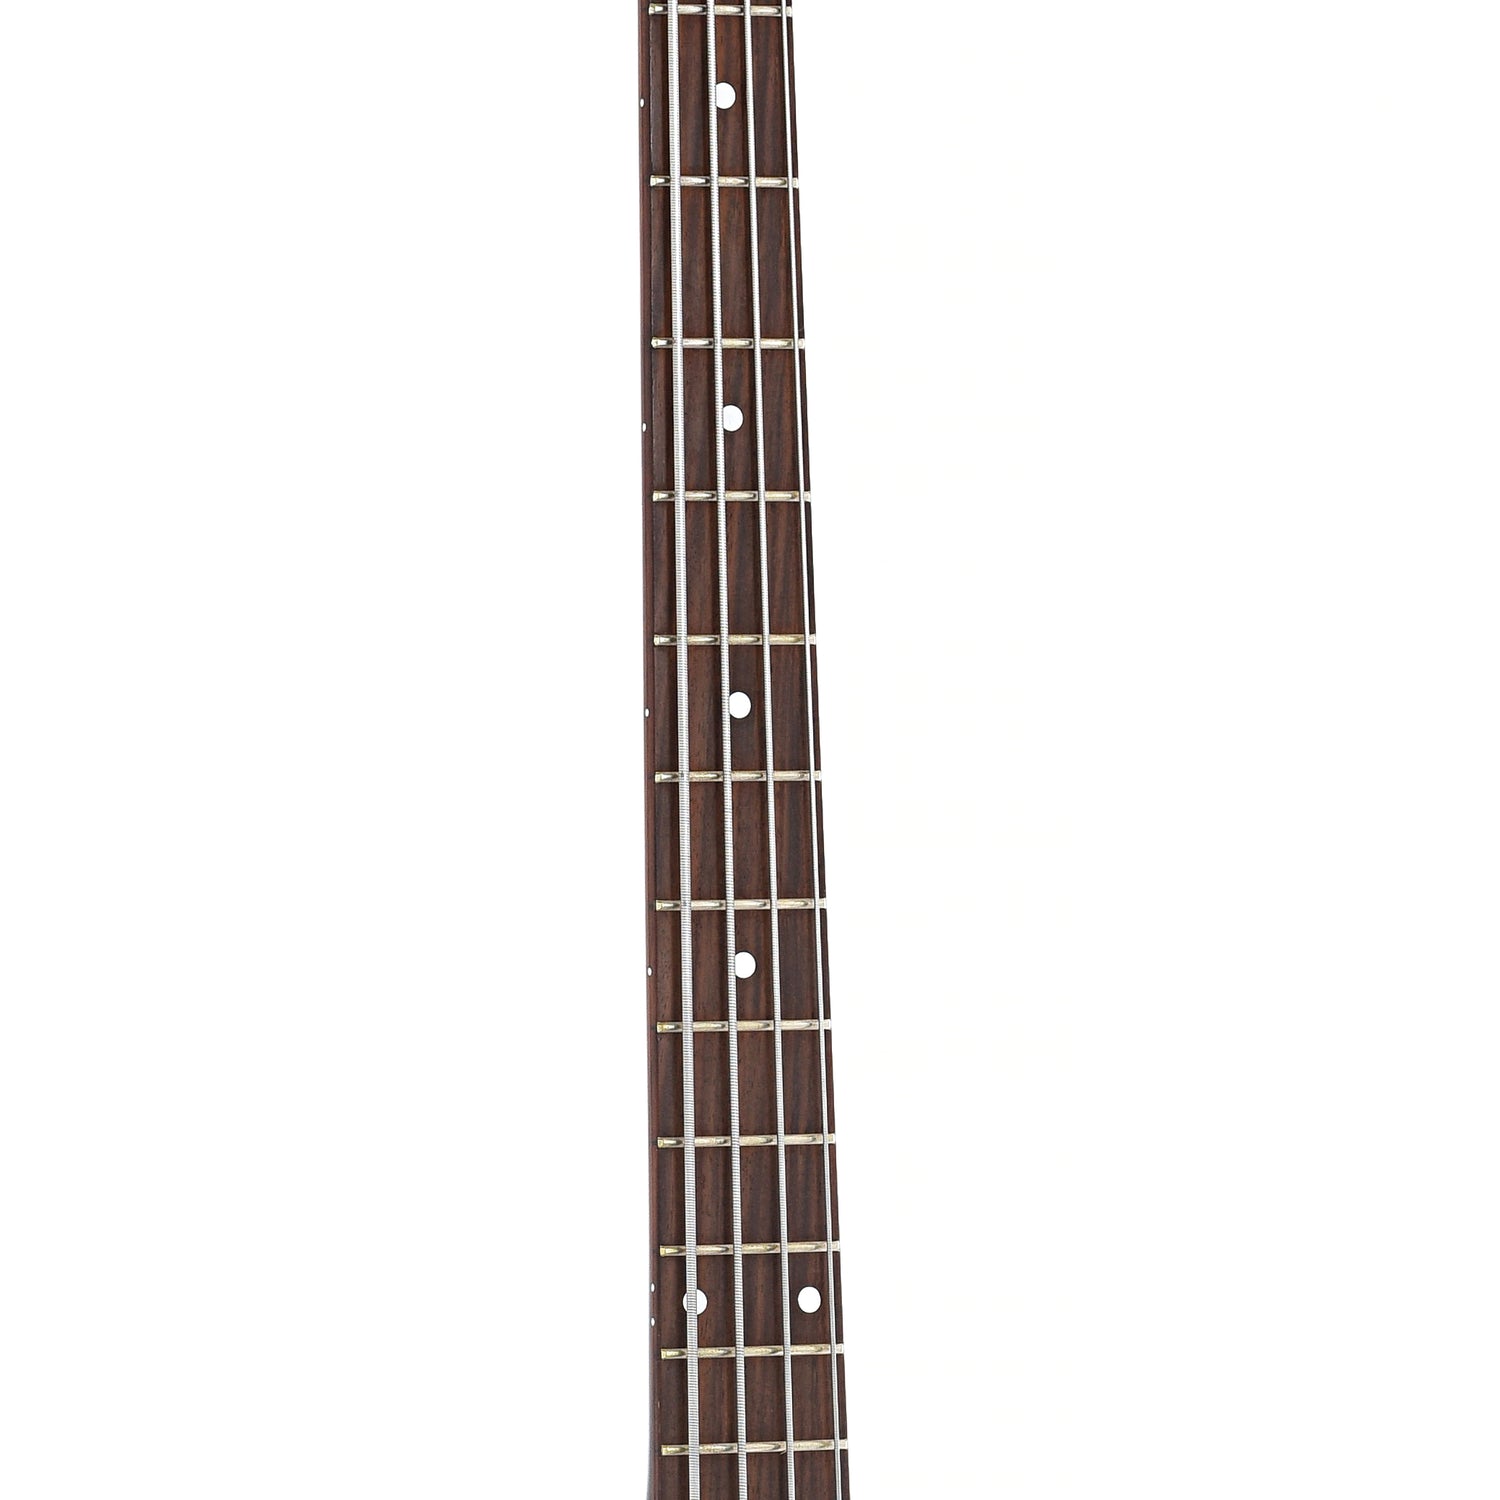 Fretboard of Gretsch 6072-68 Broadcaster Bass